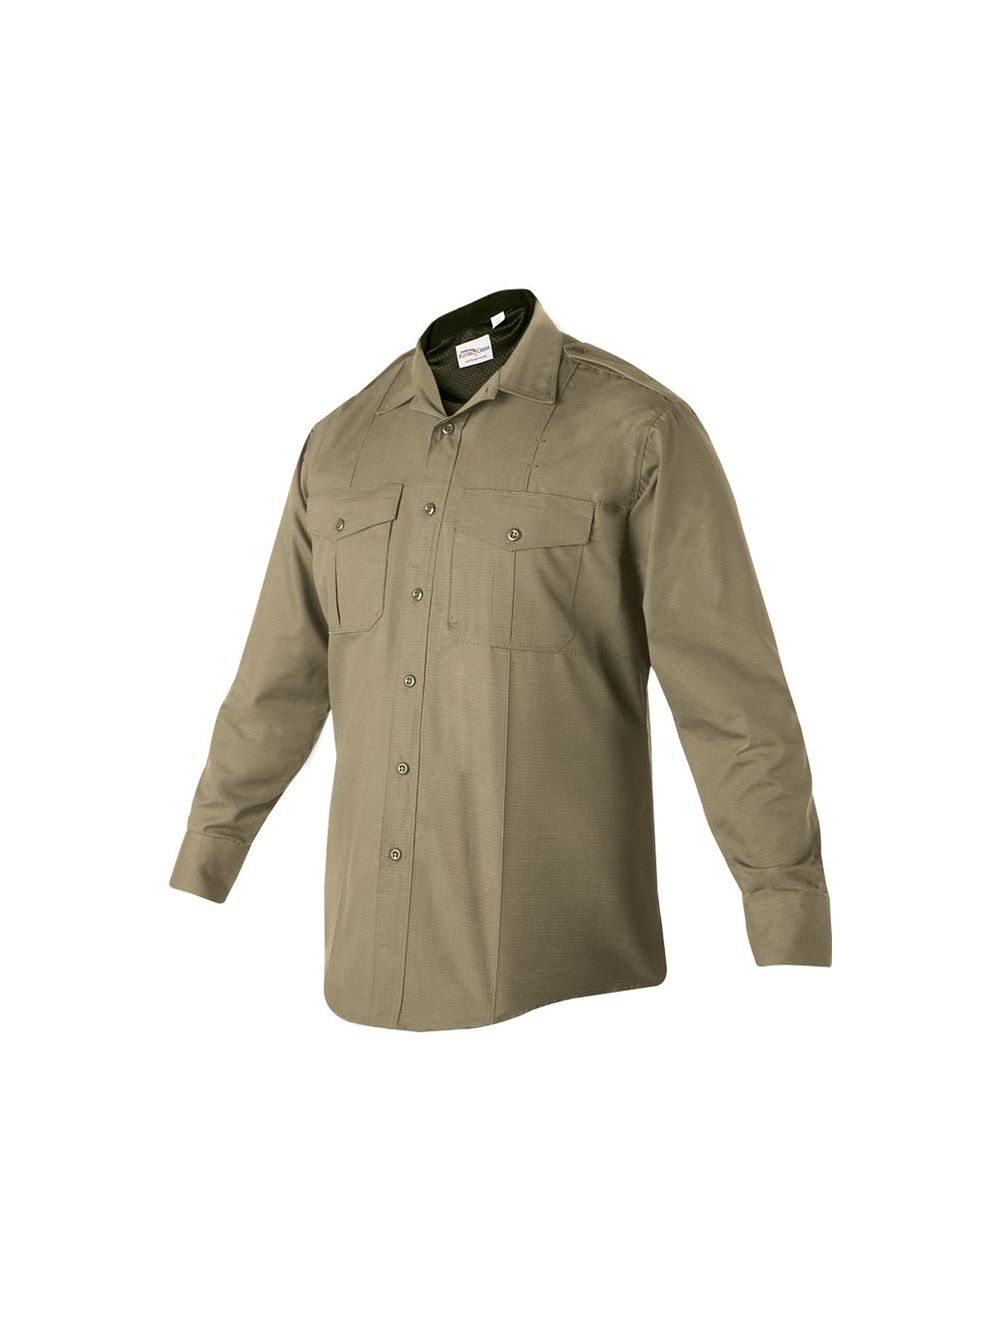 FX STAT Class B Long Sleeve Shirt